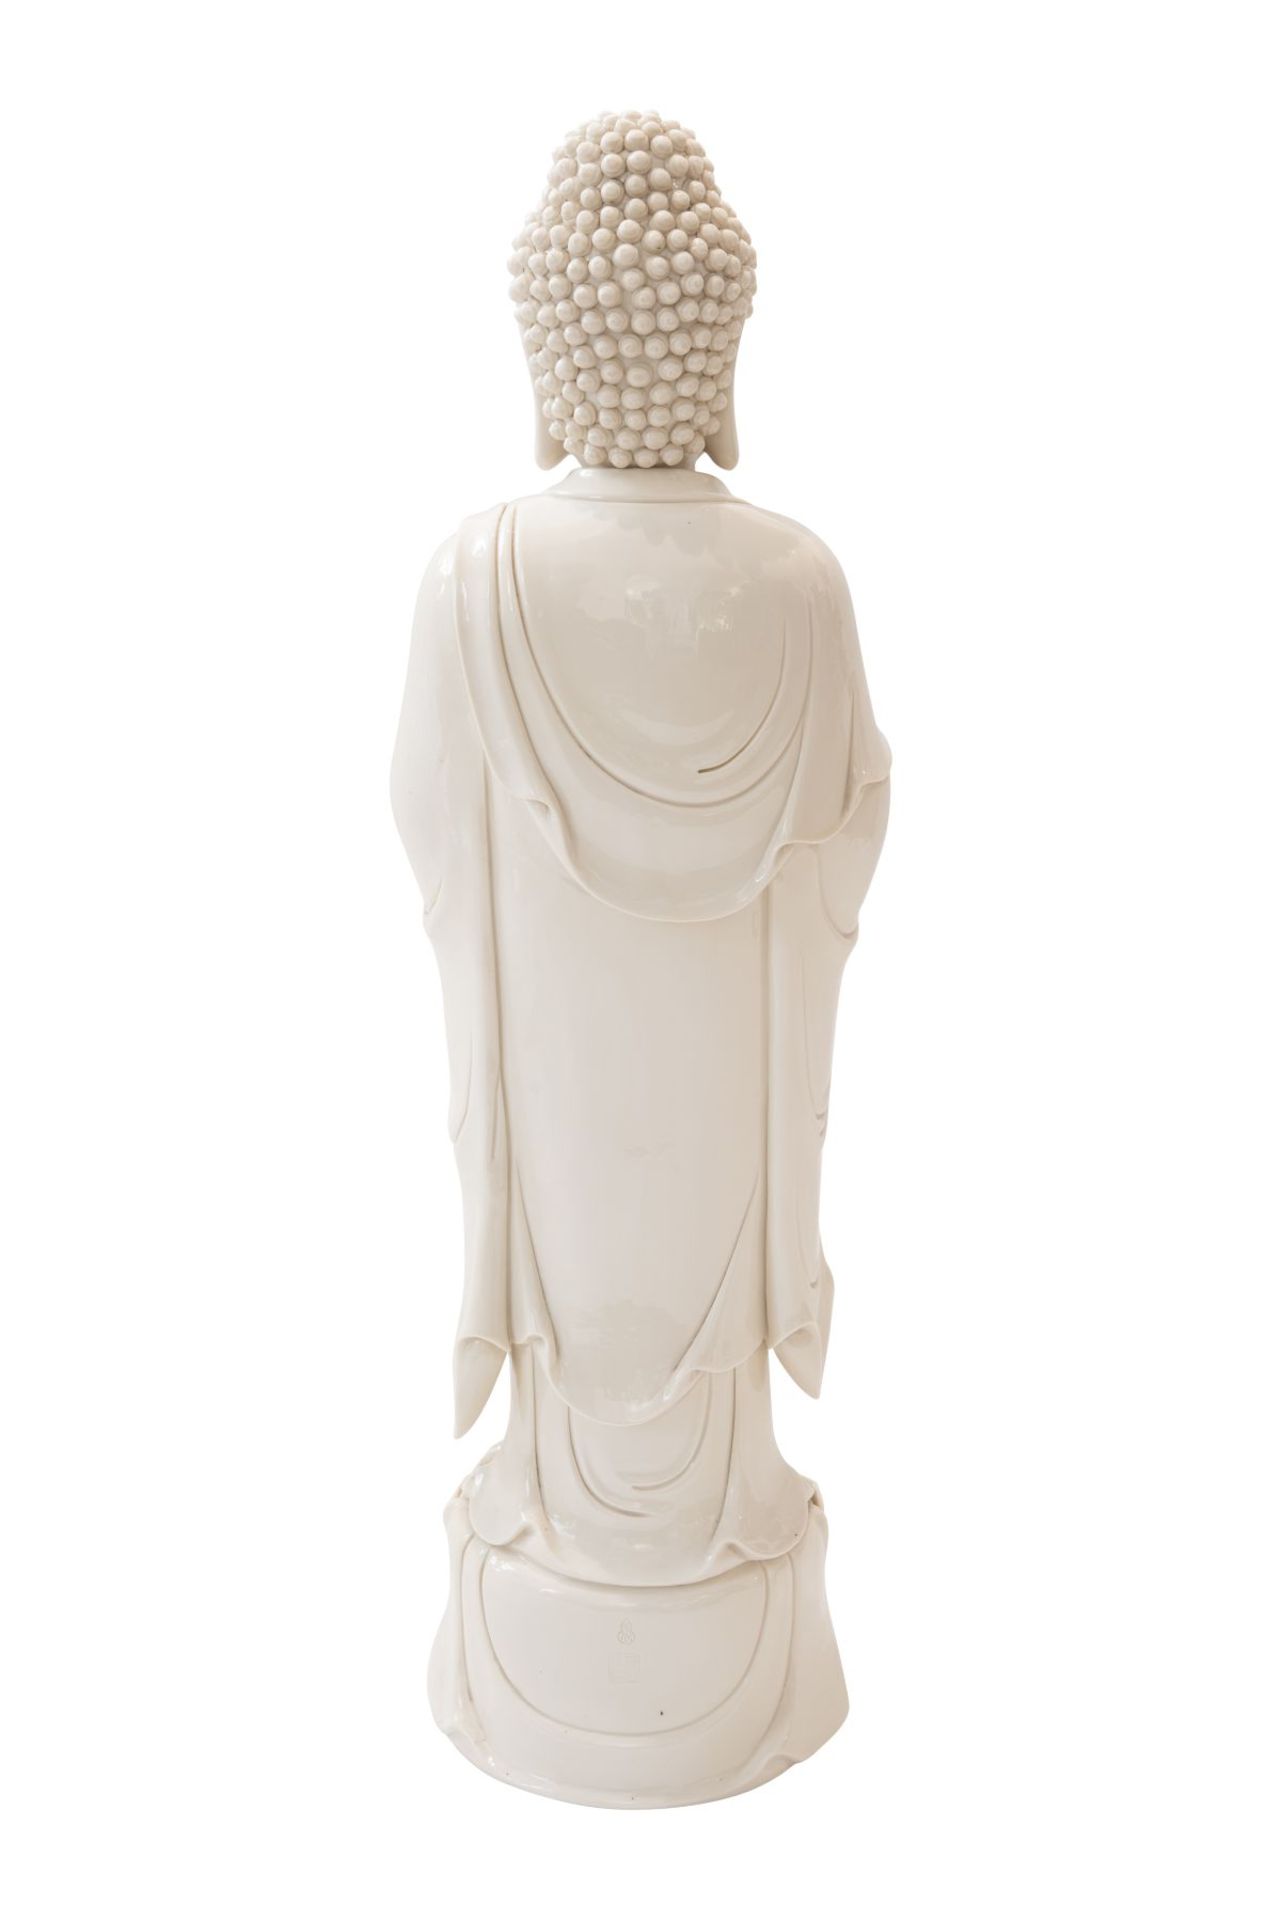 Blanc de Chine "Guanyin", PorzellanfigurPorzellan weiß glasiert. Auf einem runden Sockel mit - Image 3 of 10